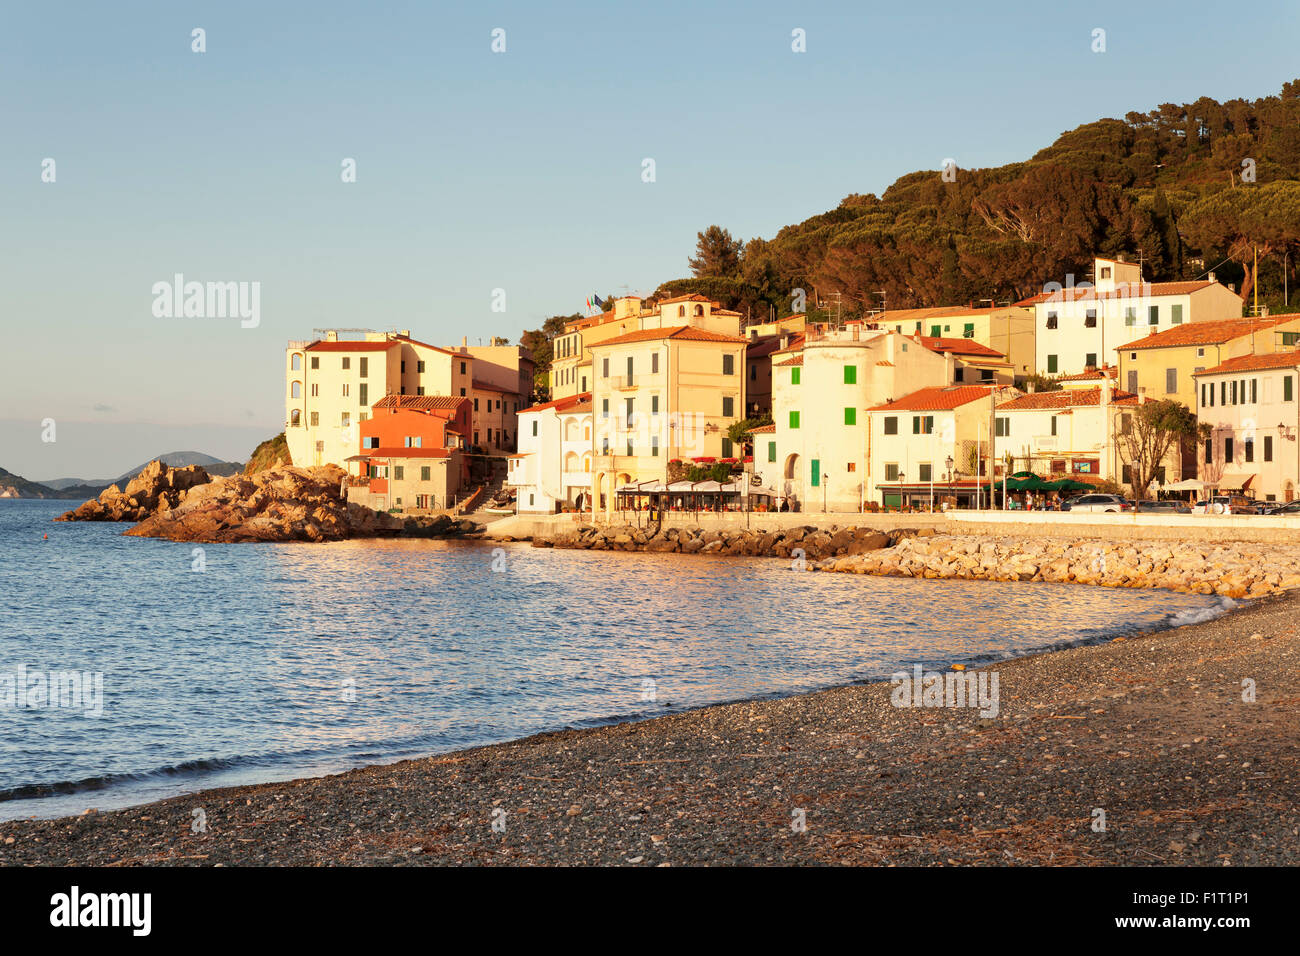 Marciana Marina at sunset, Island of Elba, Livorno Province, Tuscany, Italy, Europe Stock Photo